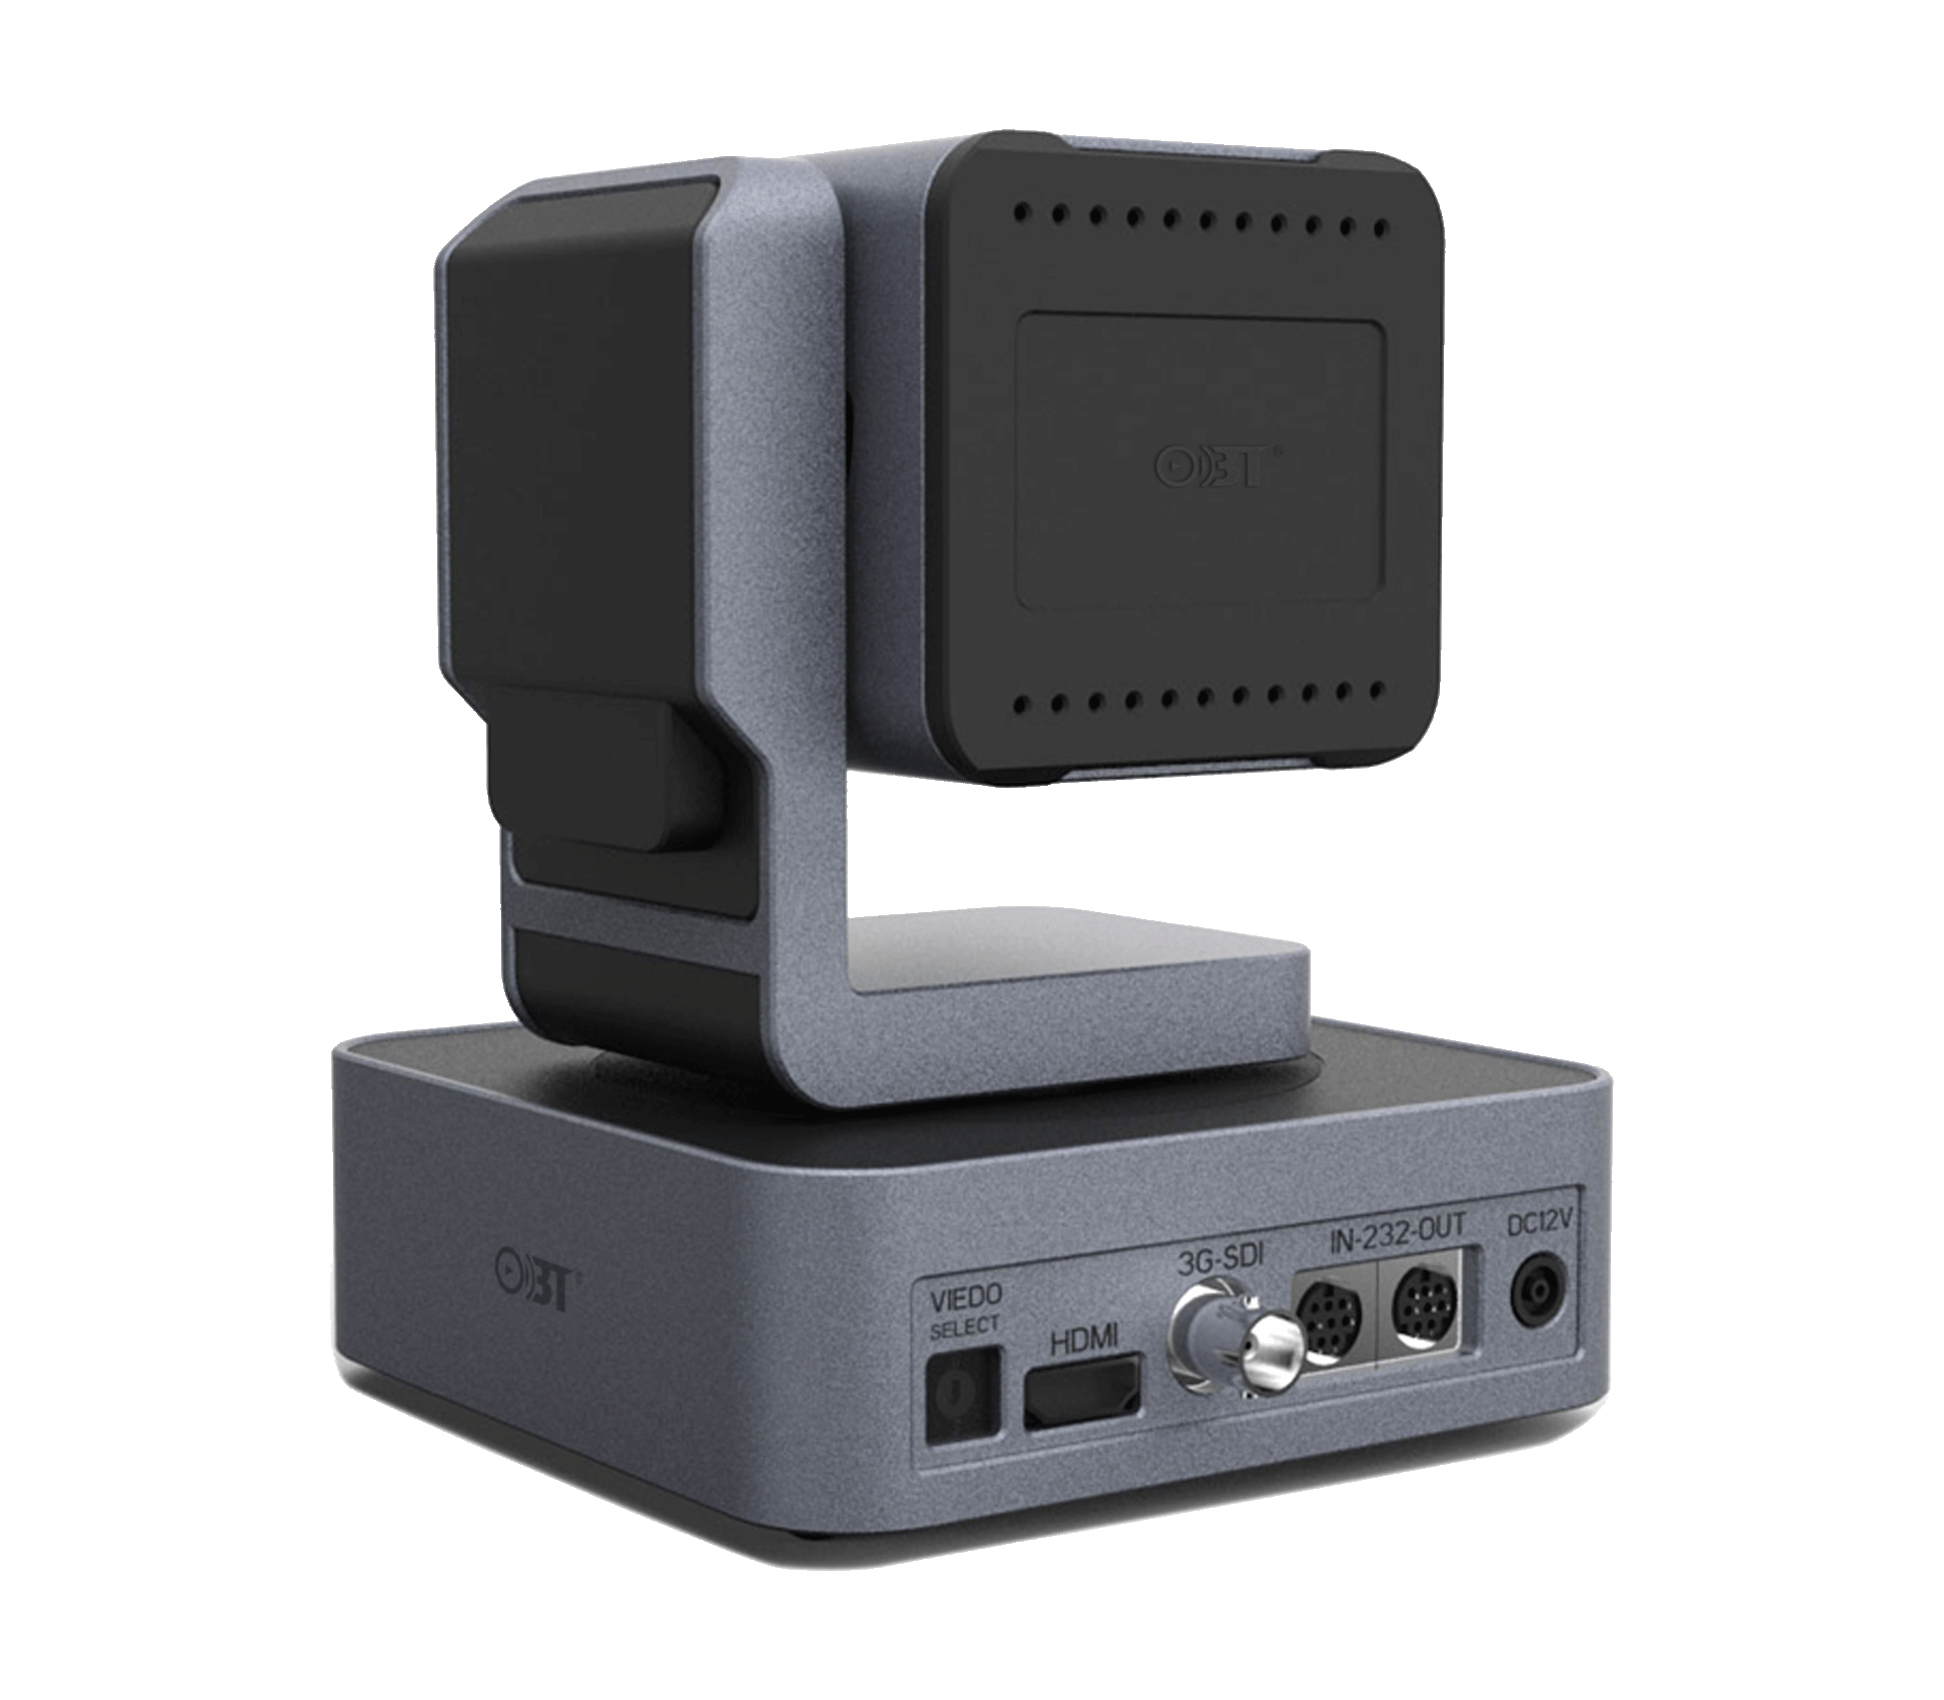 會議系統高清攝像機 OBT-HD5200